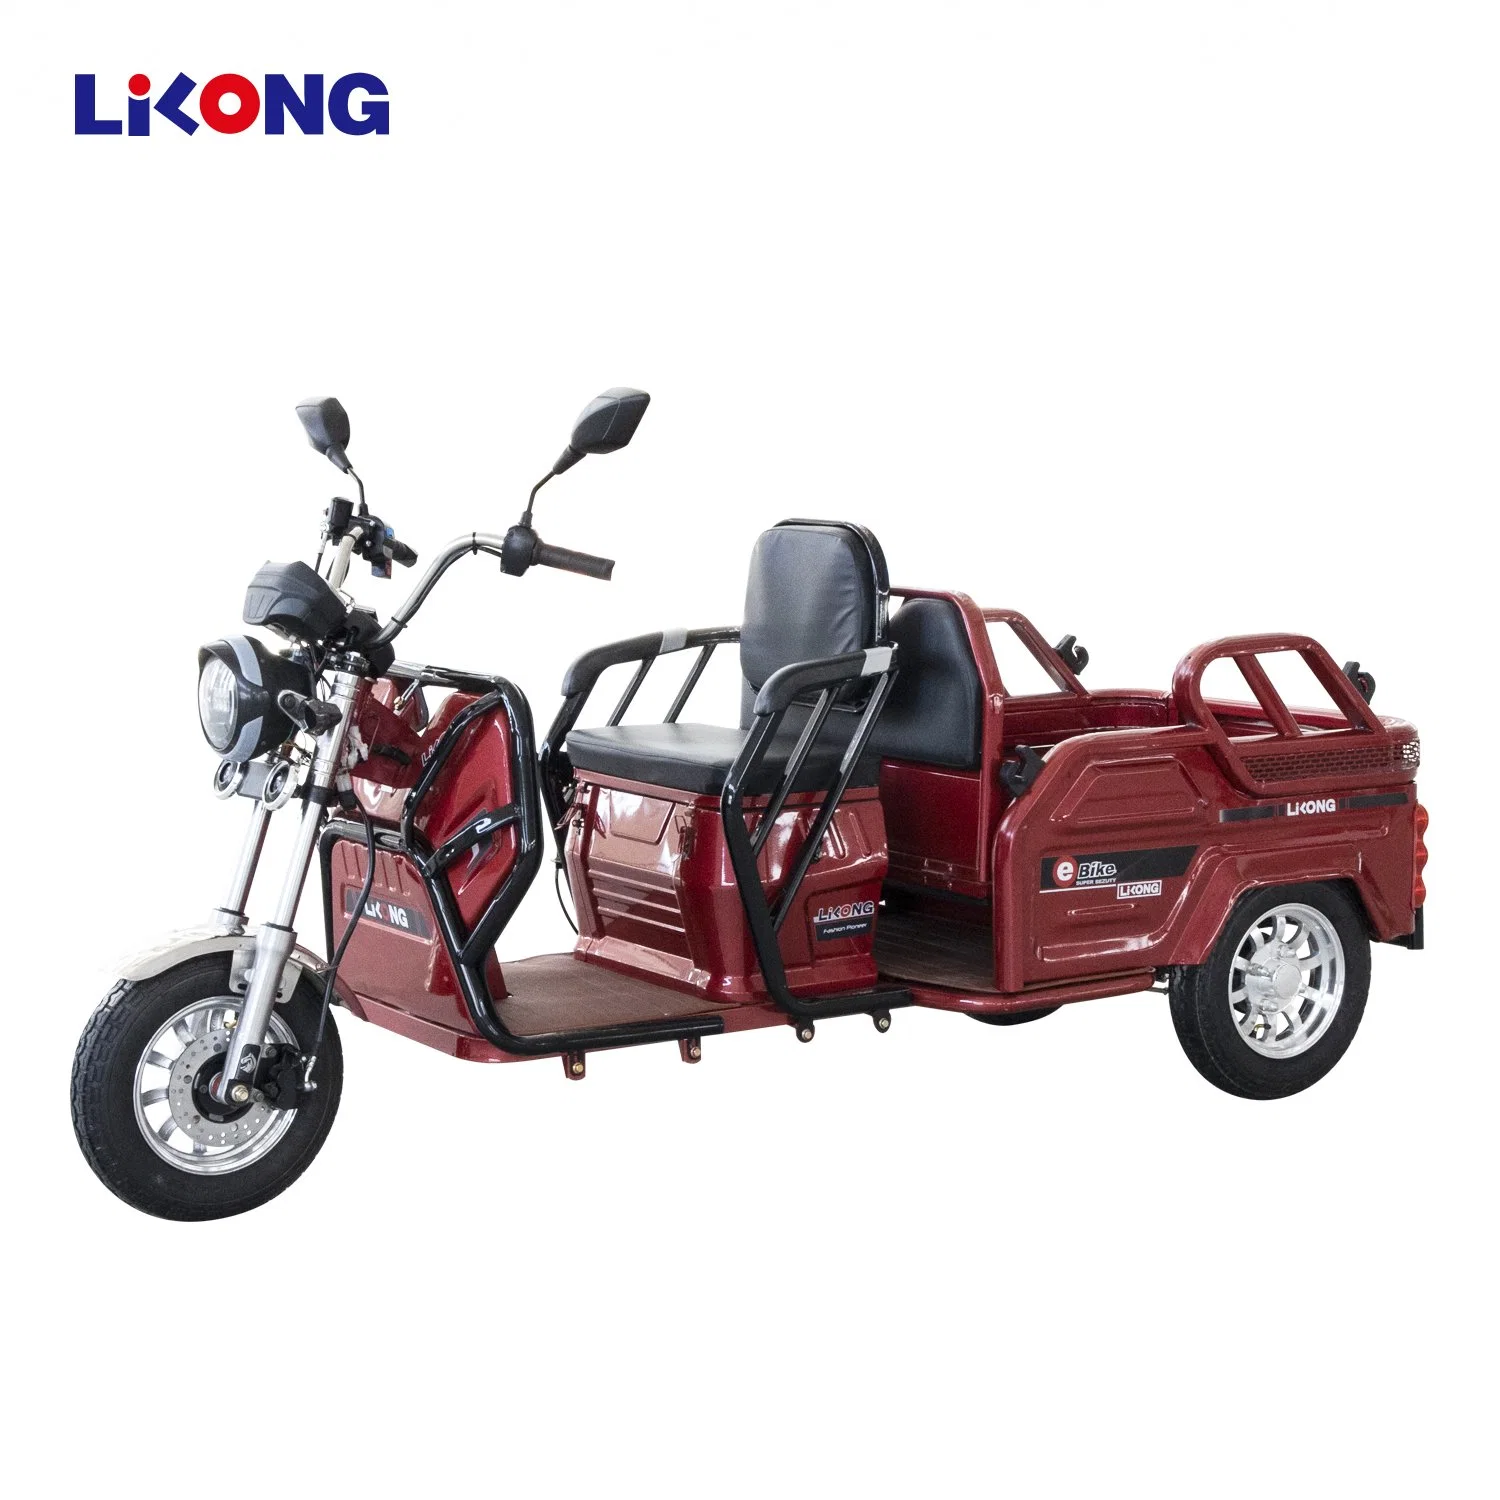 Discount Lilong Multi Use Passenger and Cargo E-Bike Tricycle

Tricycle électrique Lilong multi-usage pour passagers et marchandises en promotion.